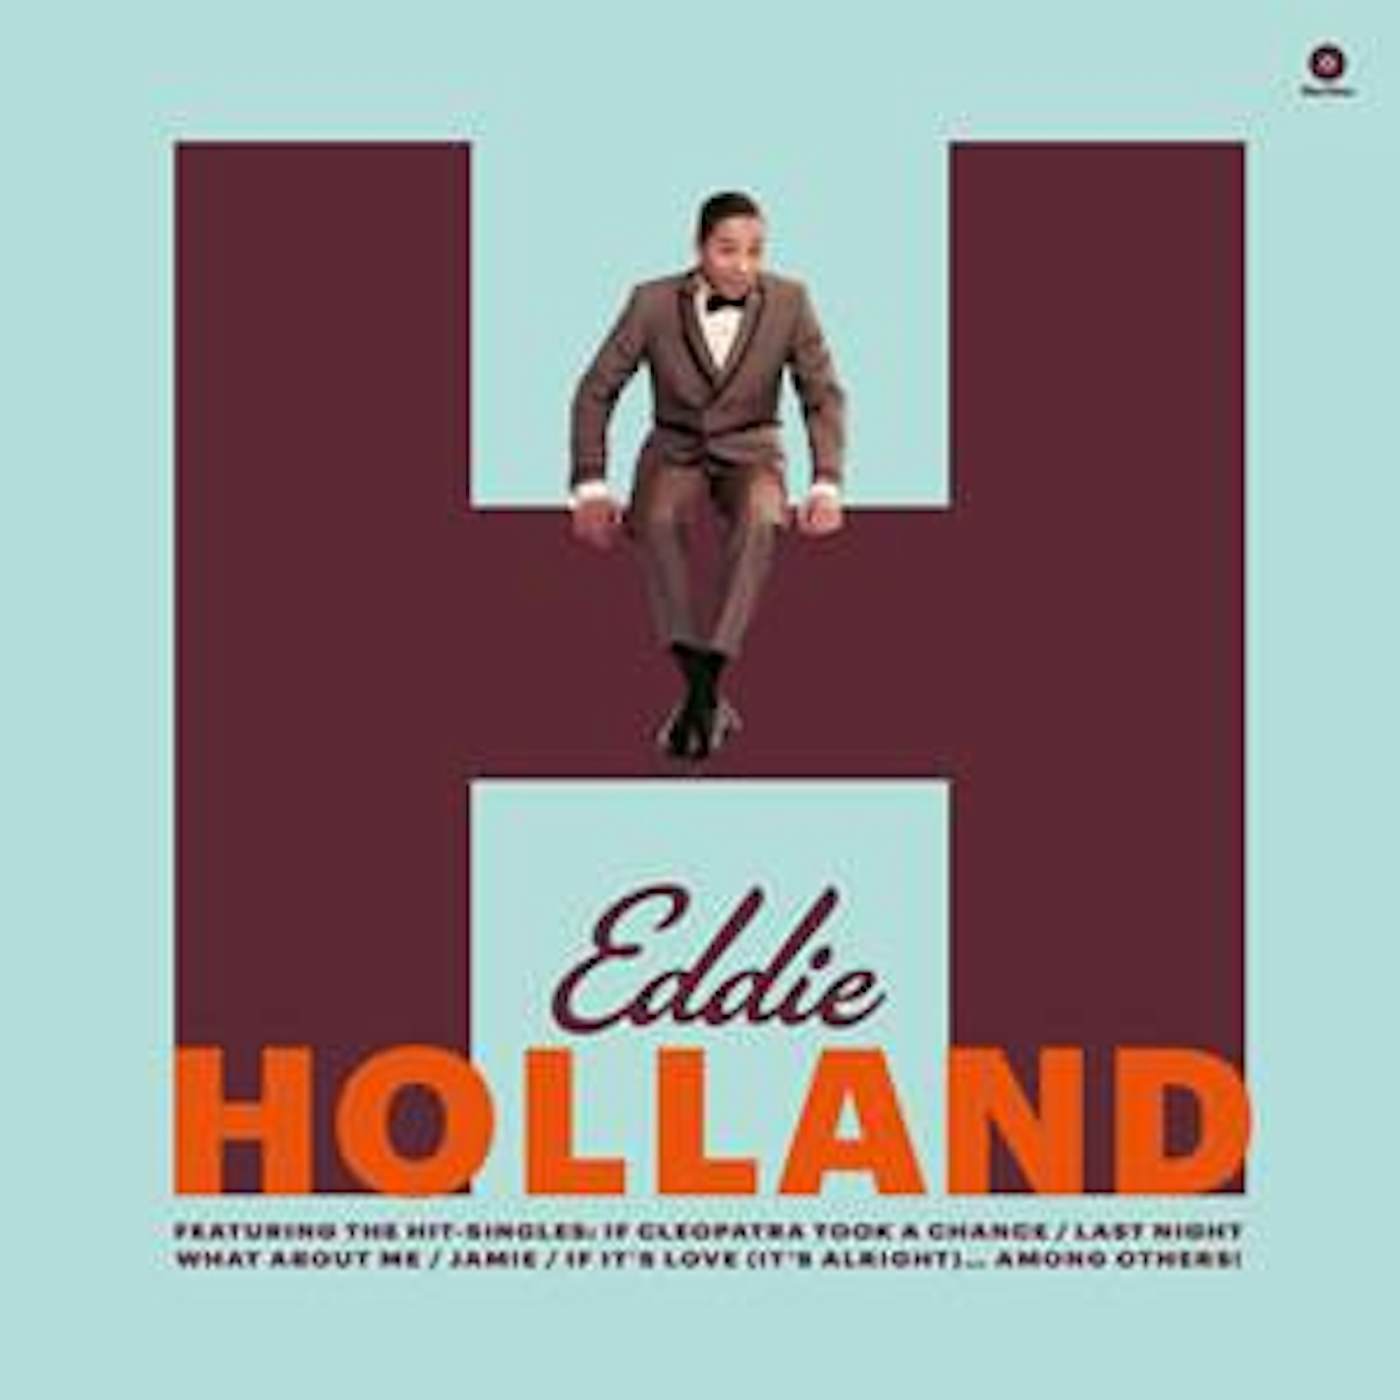 Eddie Holland FIRST ALBUM Vinyl Record